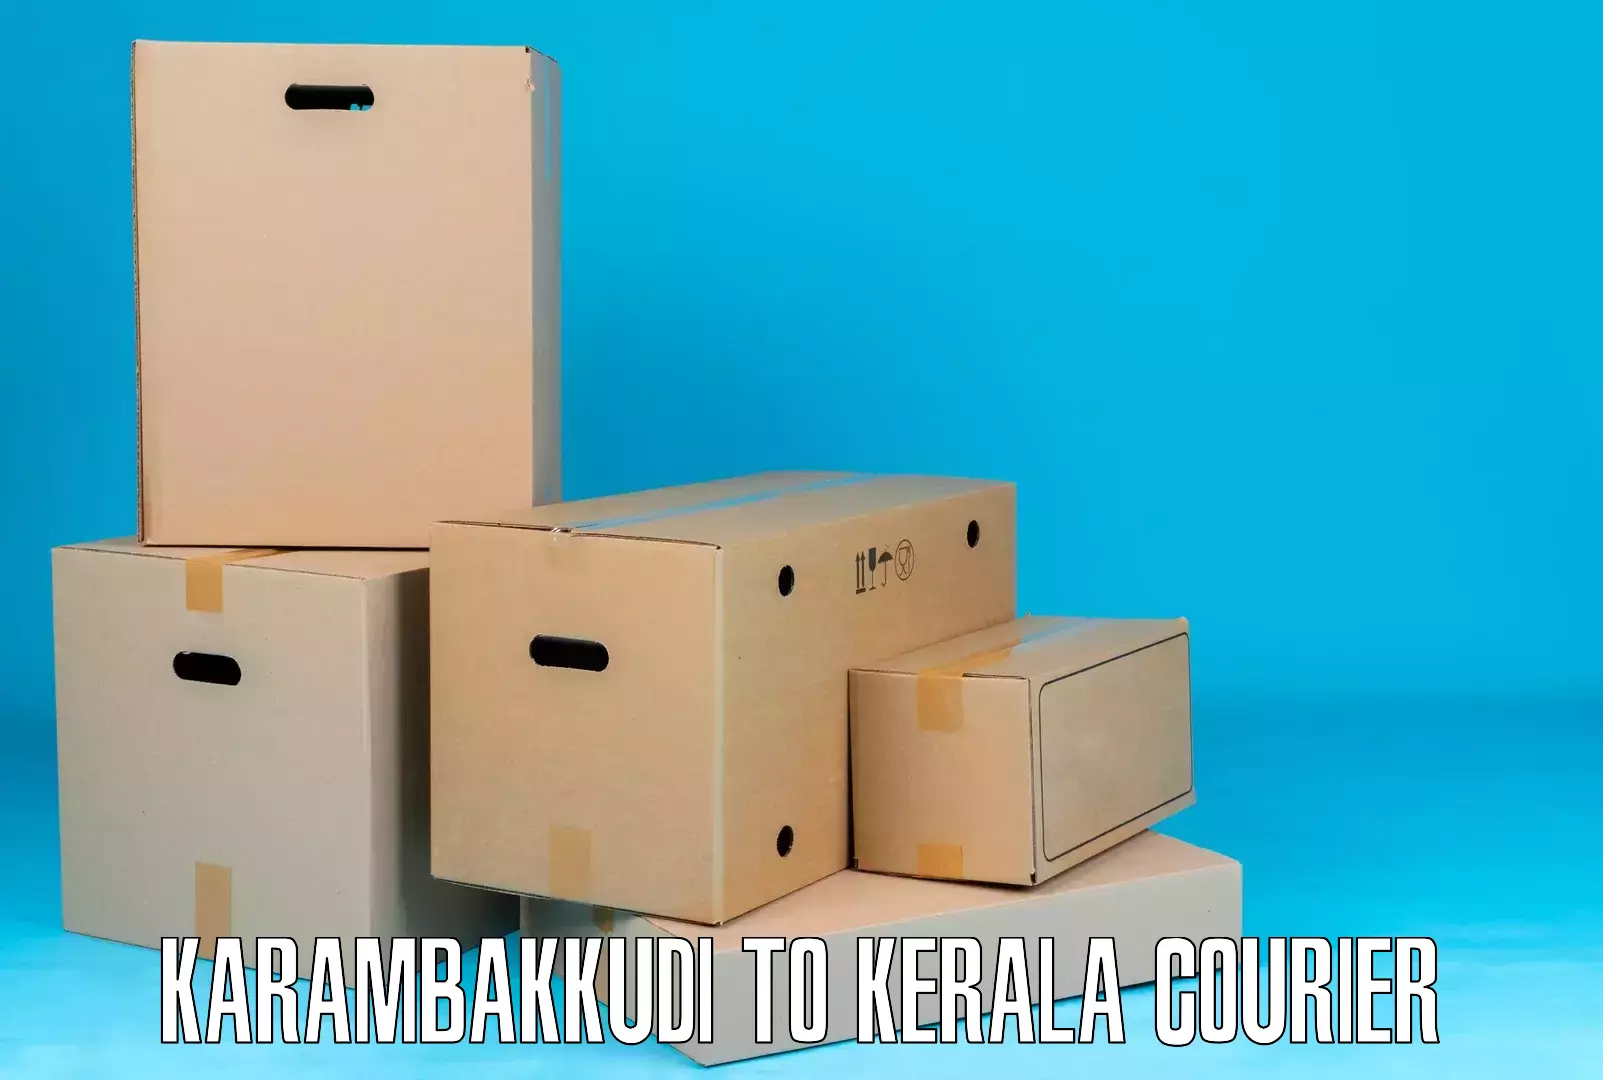 Advanced shipping technology Karambakkudi to Kayamkulam